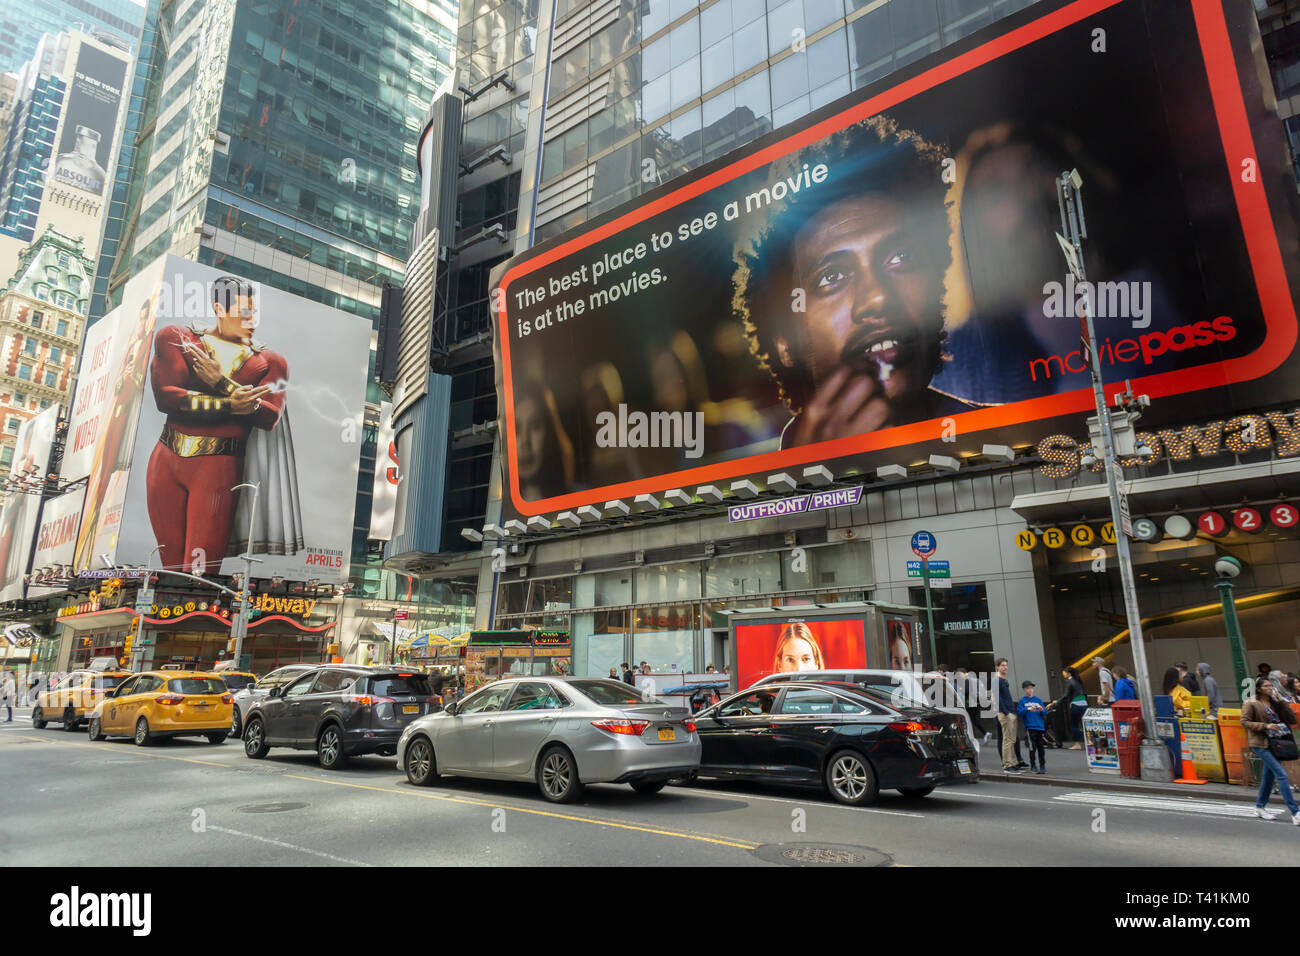 La publicité pour le service de billetterie MoviePass à Times Square à New York le dimanche 7 avril 2019. MoviePass propose un service d'abonnement pour voir les films en salles mais a récemment subi des revers financiers et opérationnels. (© Richard B. Levine) Banque D'Images